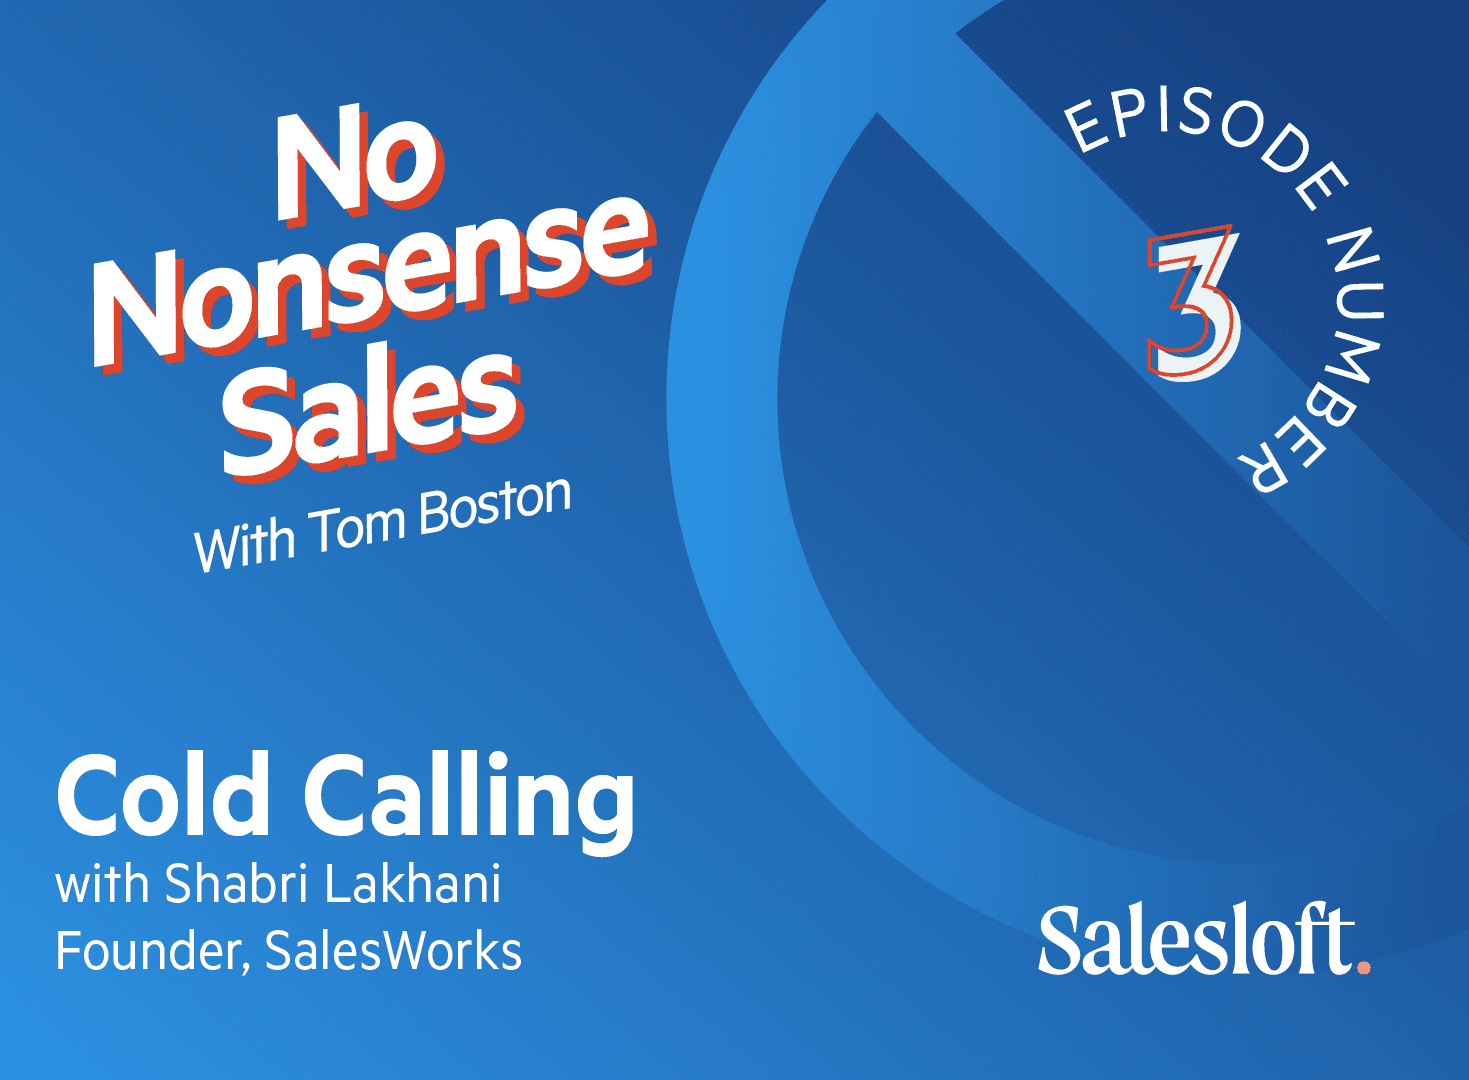 No Nonsense Sales Episode 3